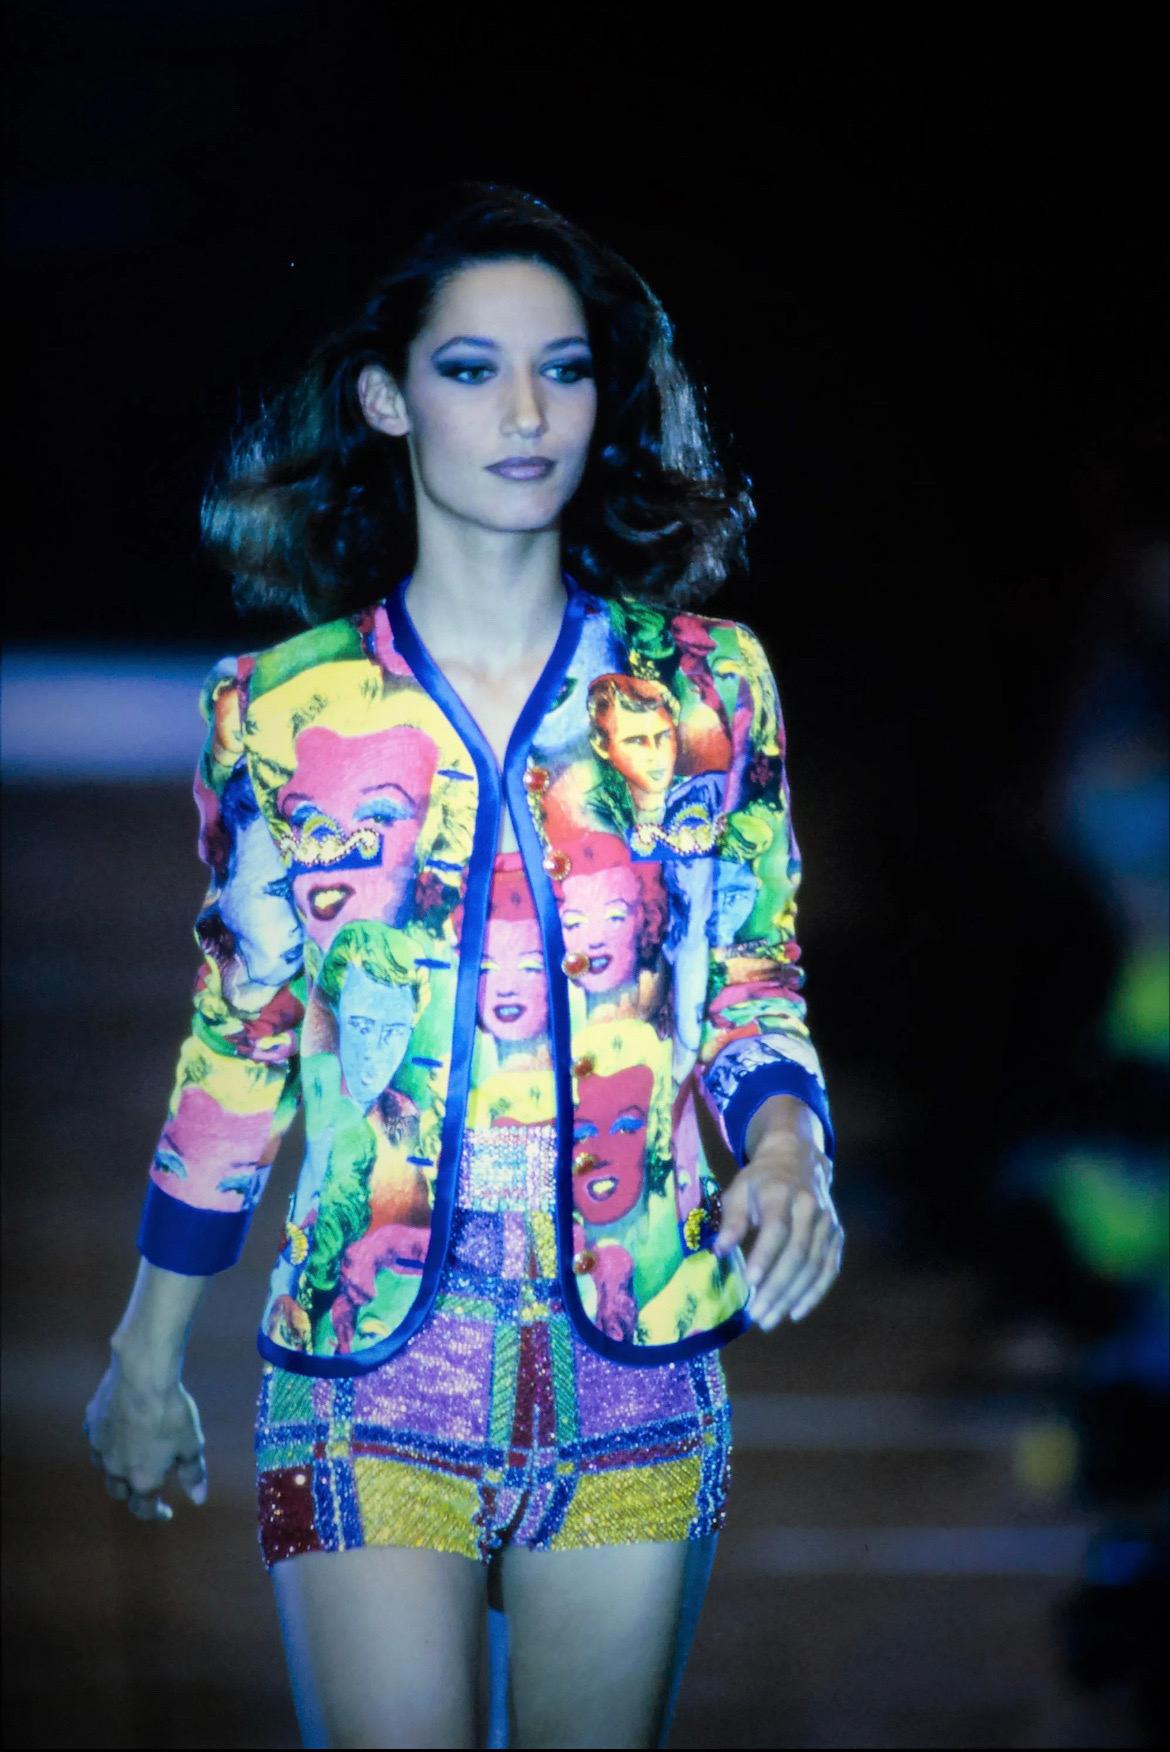 Combinaison jupe Gianni Versace Couture en excellent état, datant du printemps-été 1991, avec un motif pop art inspiré d'Andy Warhol représentant les icônes de la culture pop Marilyn Monroe et James Dean. 
Comme vu sur le défilé printemps-été 1991